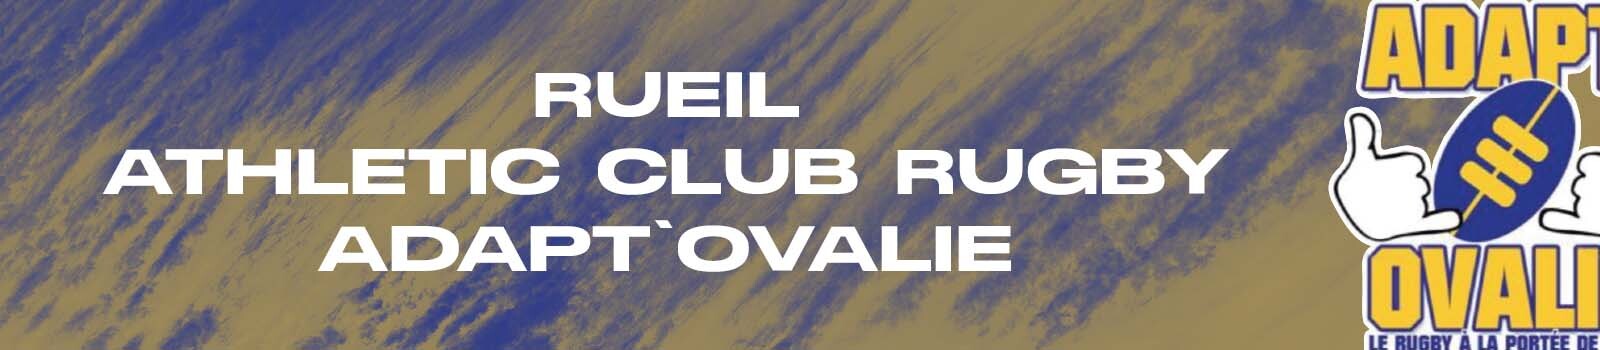 Rueil Athletic Club Rugby - Adapt'Ovalie